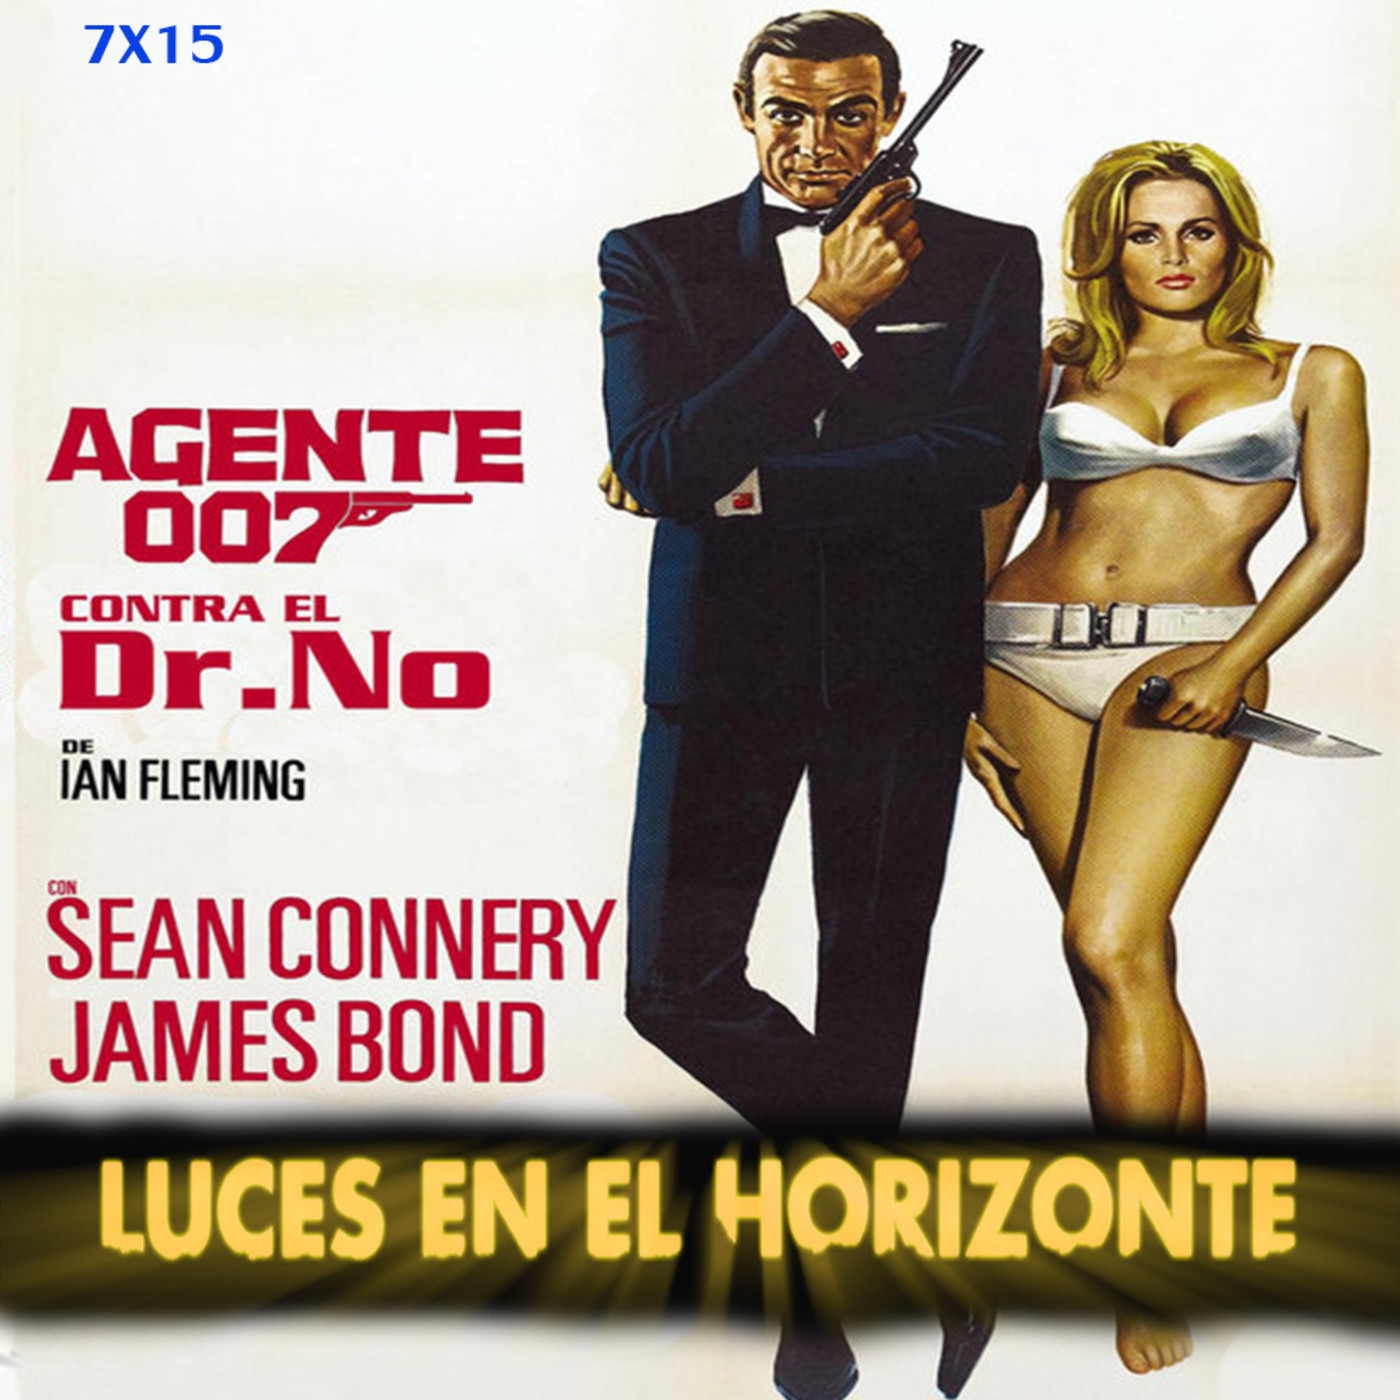 Leeh 7X15: AGENTE 007 CONTRA EL DR. NO